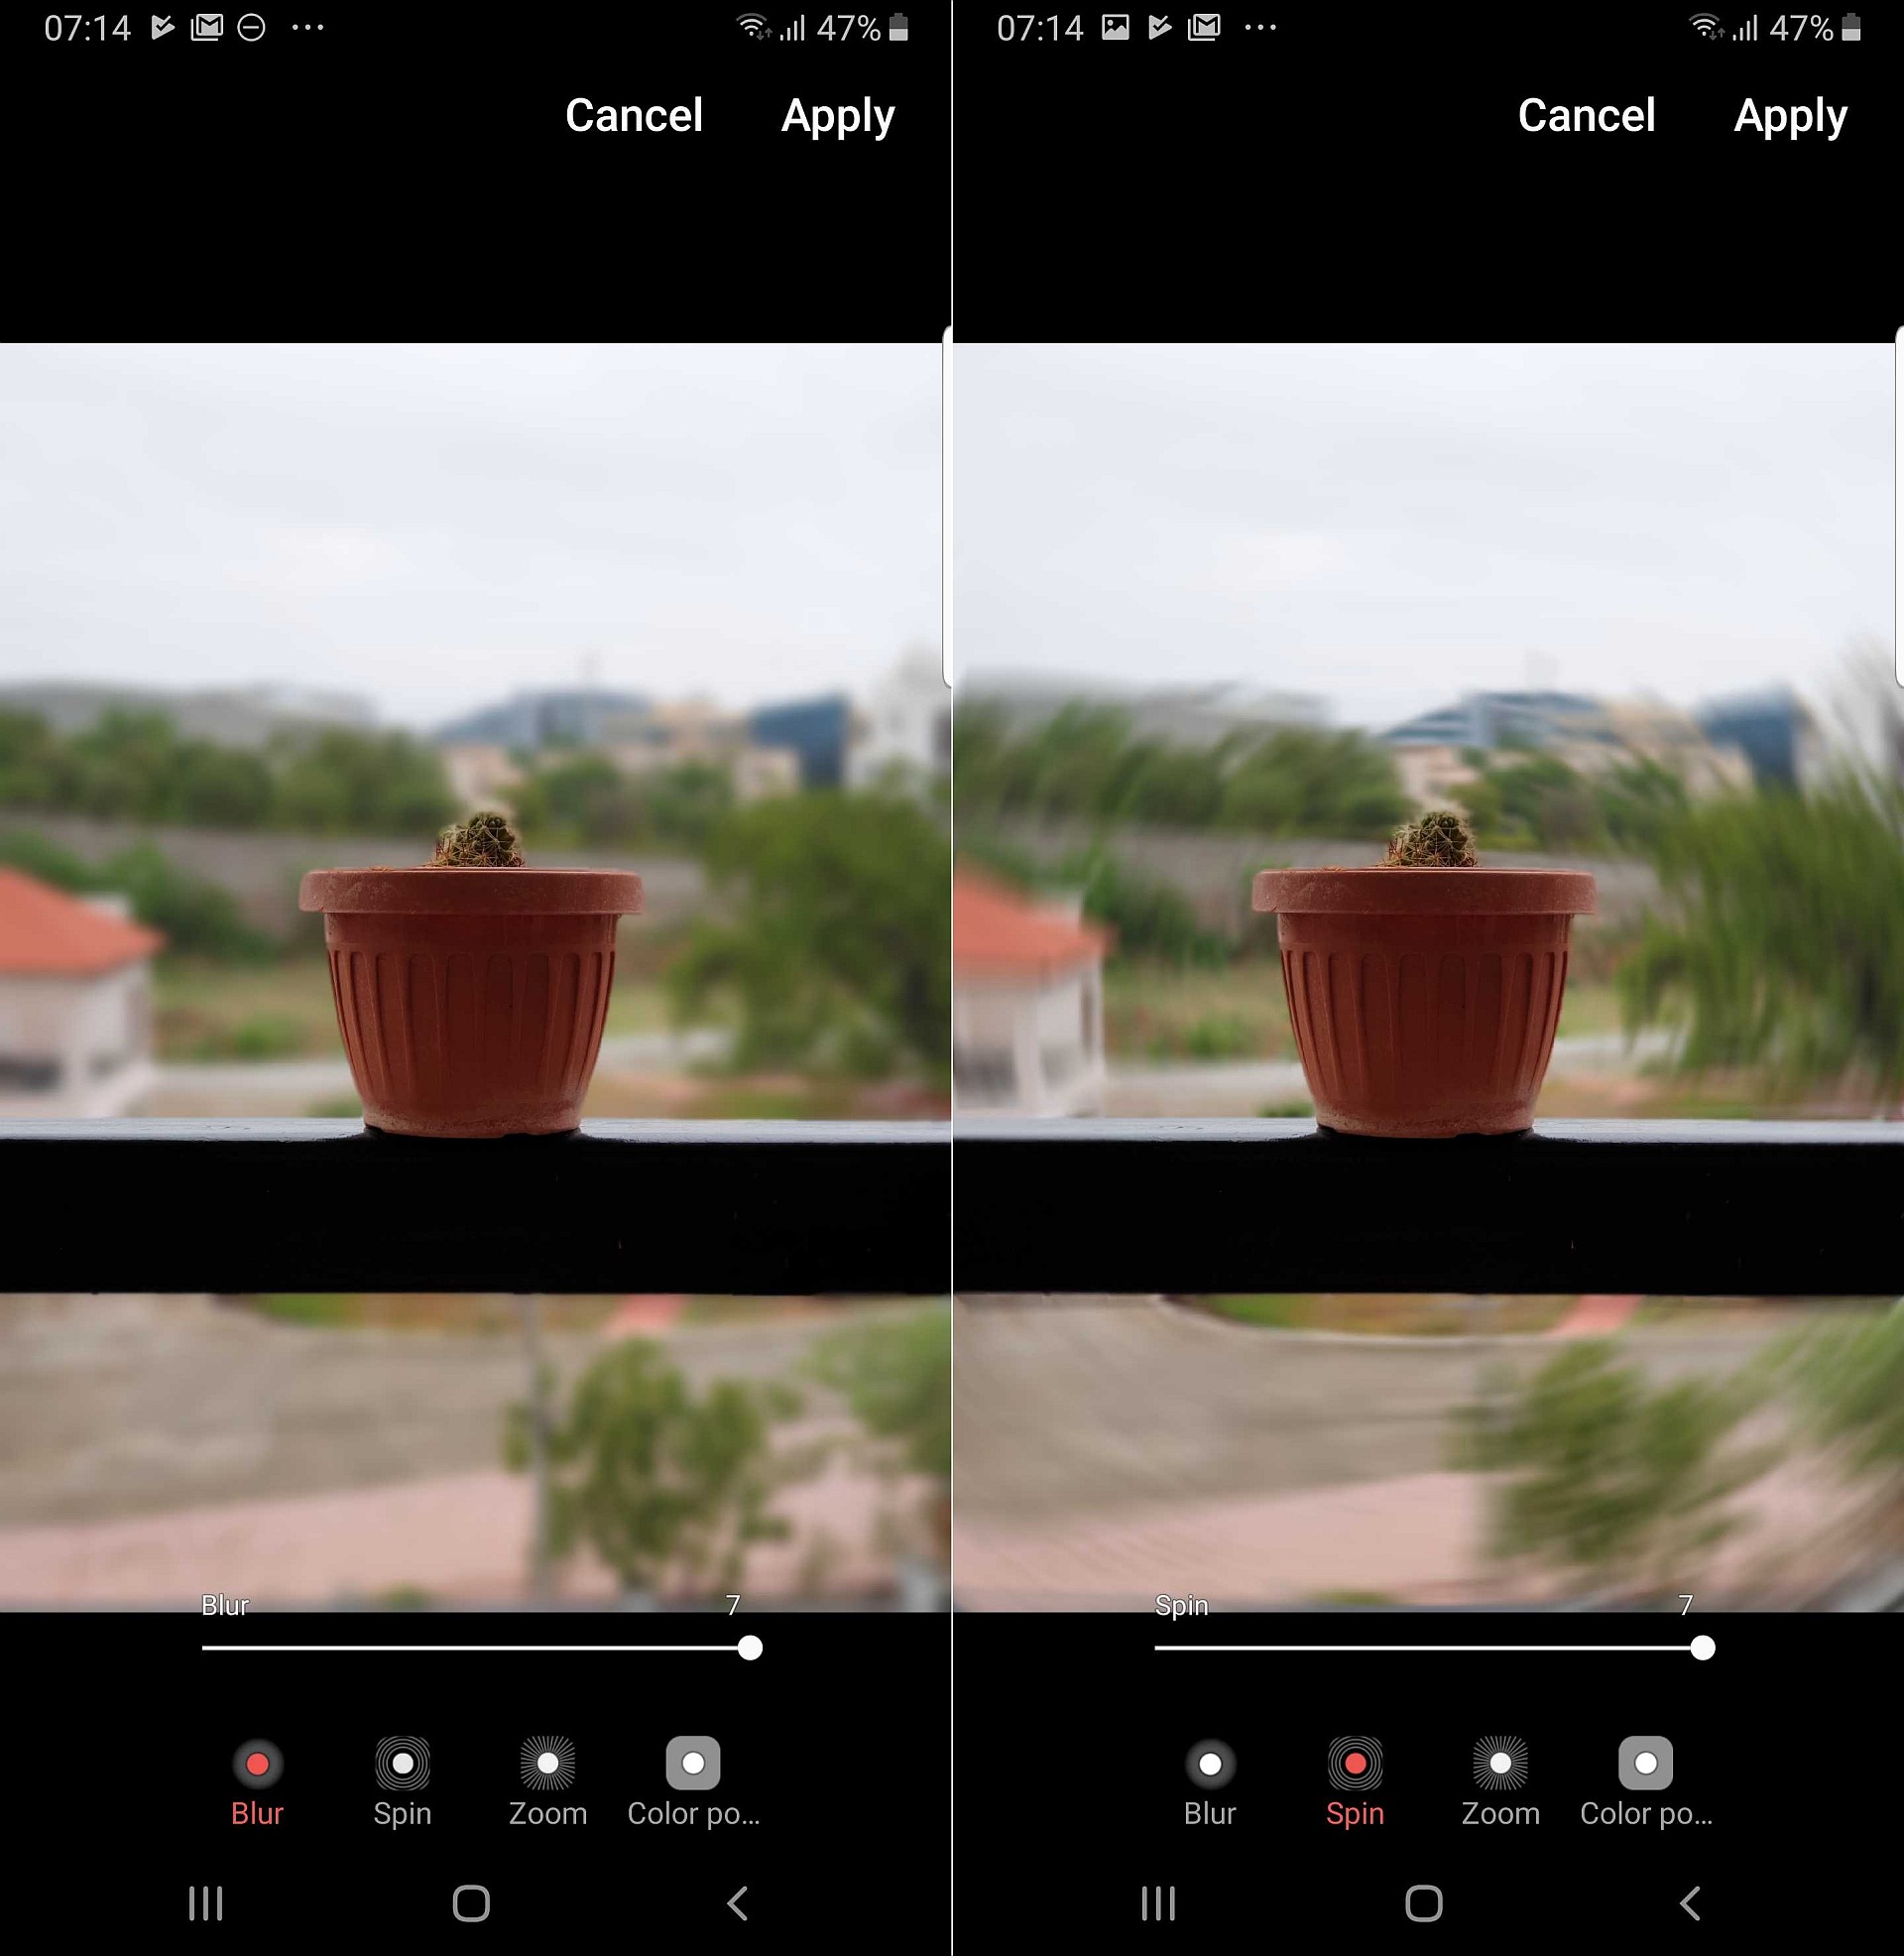 Galaxy S10 Live Focus effects: Khám phá những hiệu ứng Live Focus đầy ấn tượng và sáng tạo trên Galaxy S